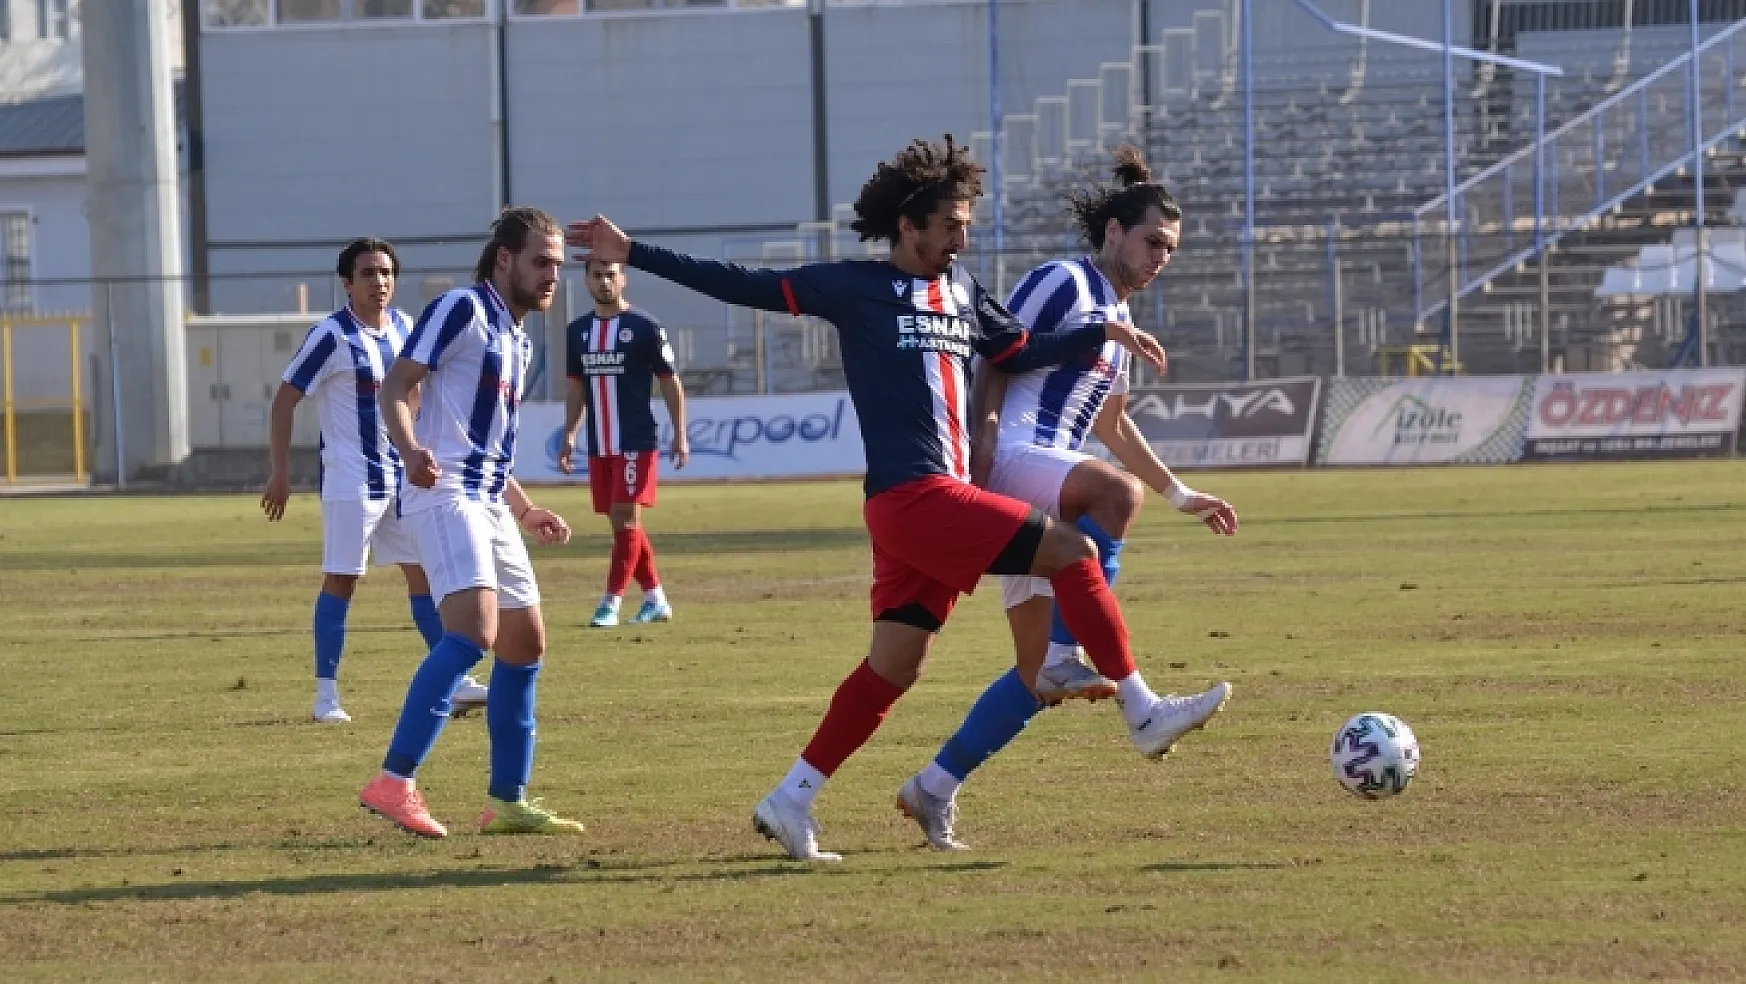 Fethiyespor evinde kazanmaya devam ediyor 4-0